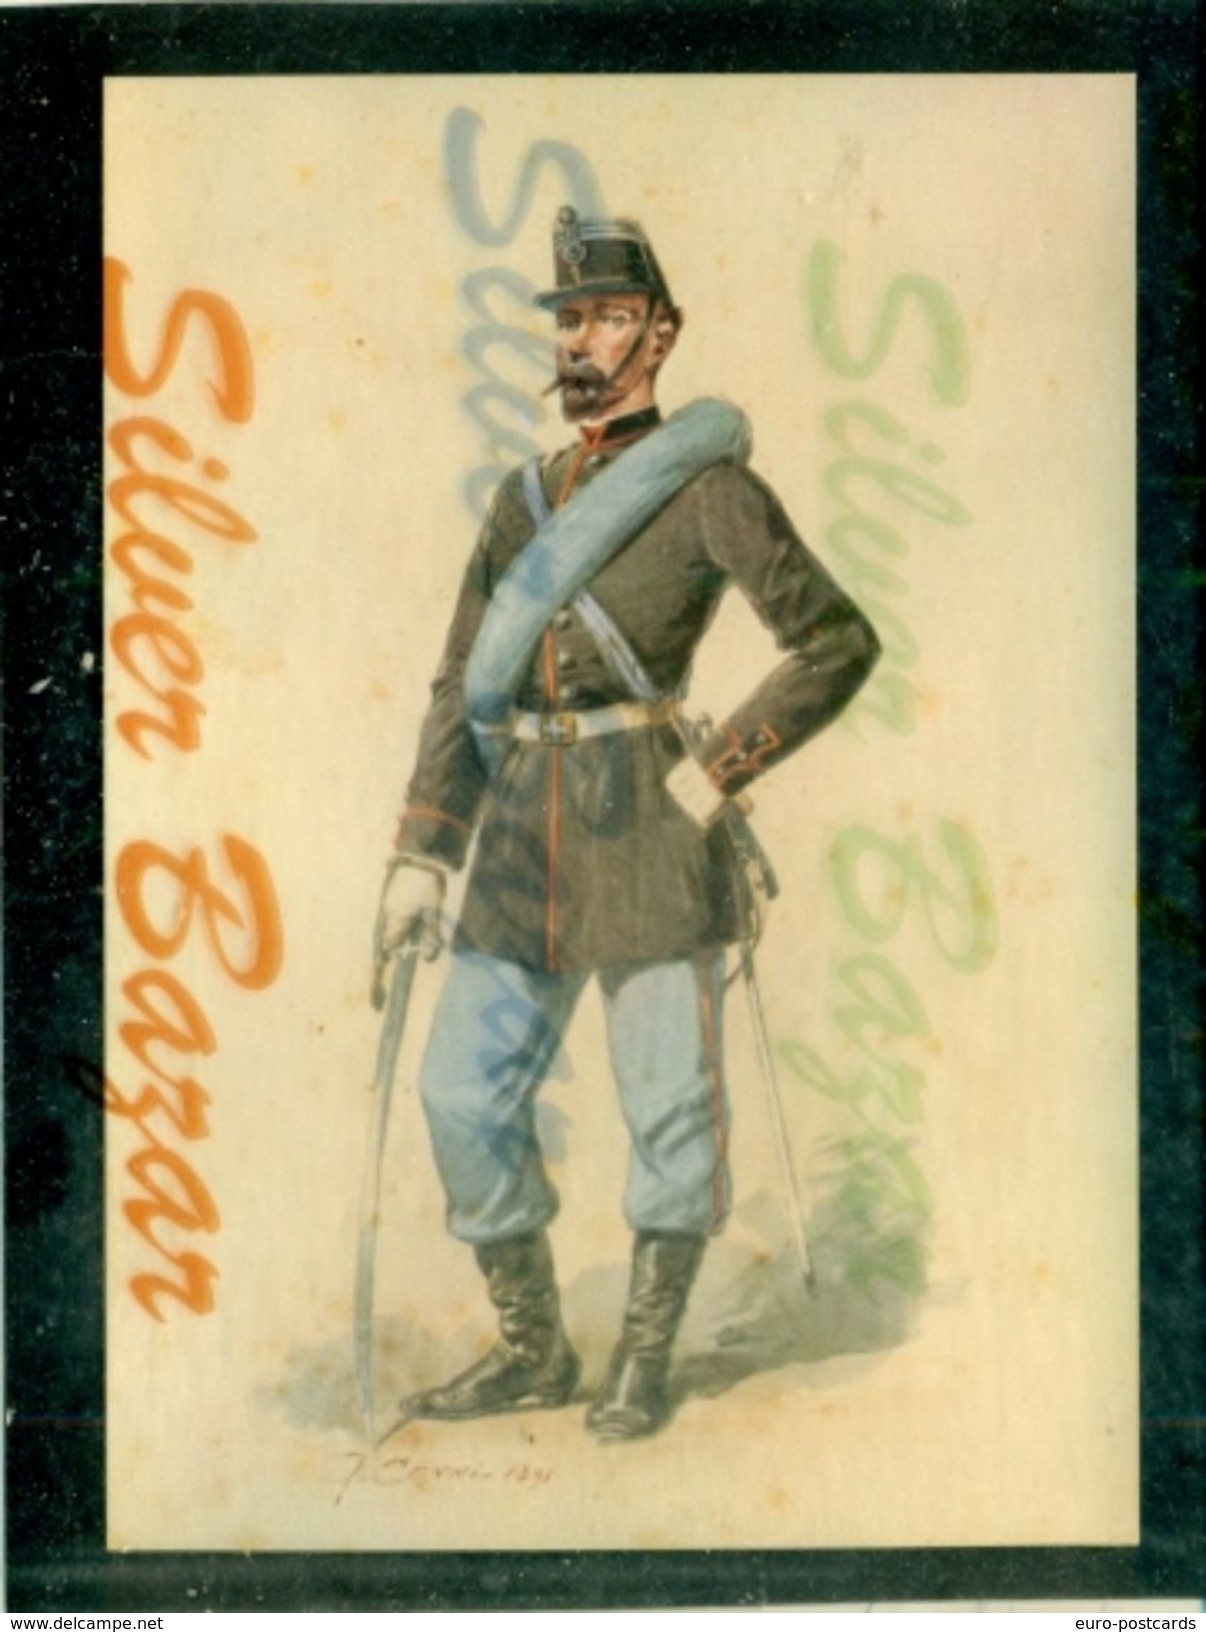 MILITARI-FANTERIA-BRIG.SAVOIA-ILLUSTRATORI CENNI-CARTOLINA CM.15 X 10,50-ANNI 60-MUSEO DI SAN MARTINO DELLA BATTAGLIA - Regiments